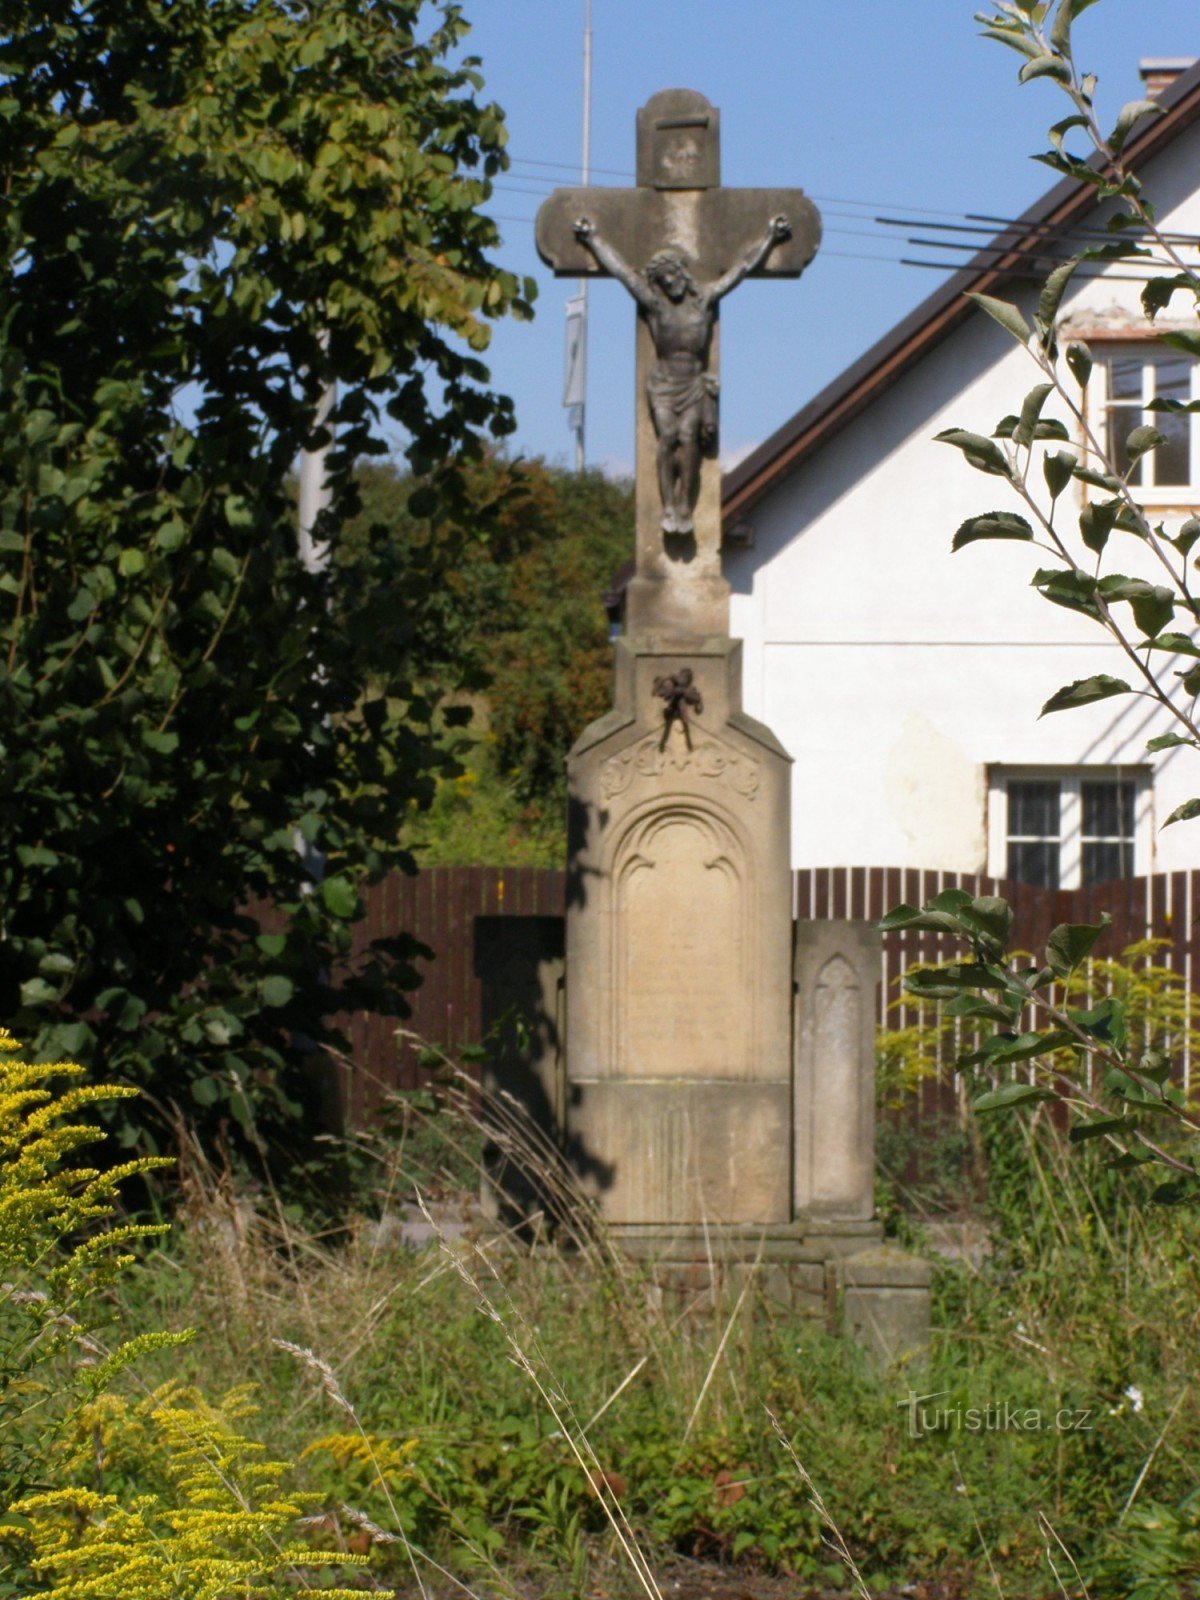 Градец Кралове - памятник распятию с колокольней в Силезском пригороде